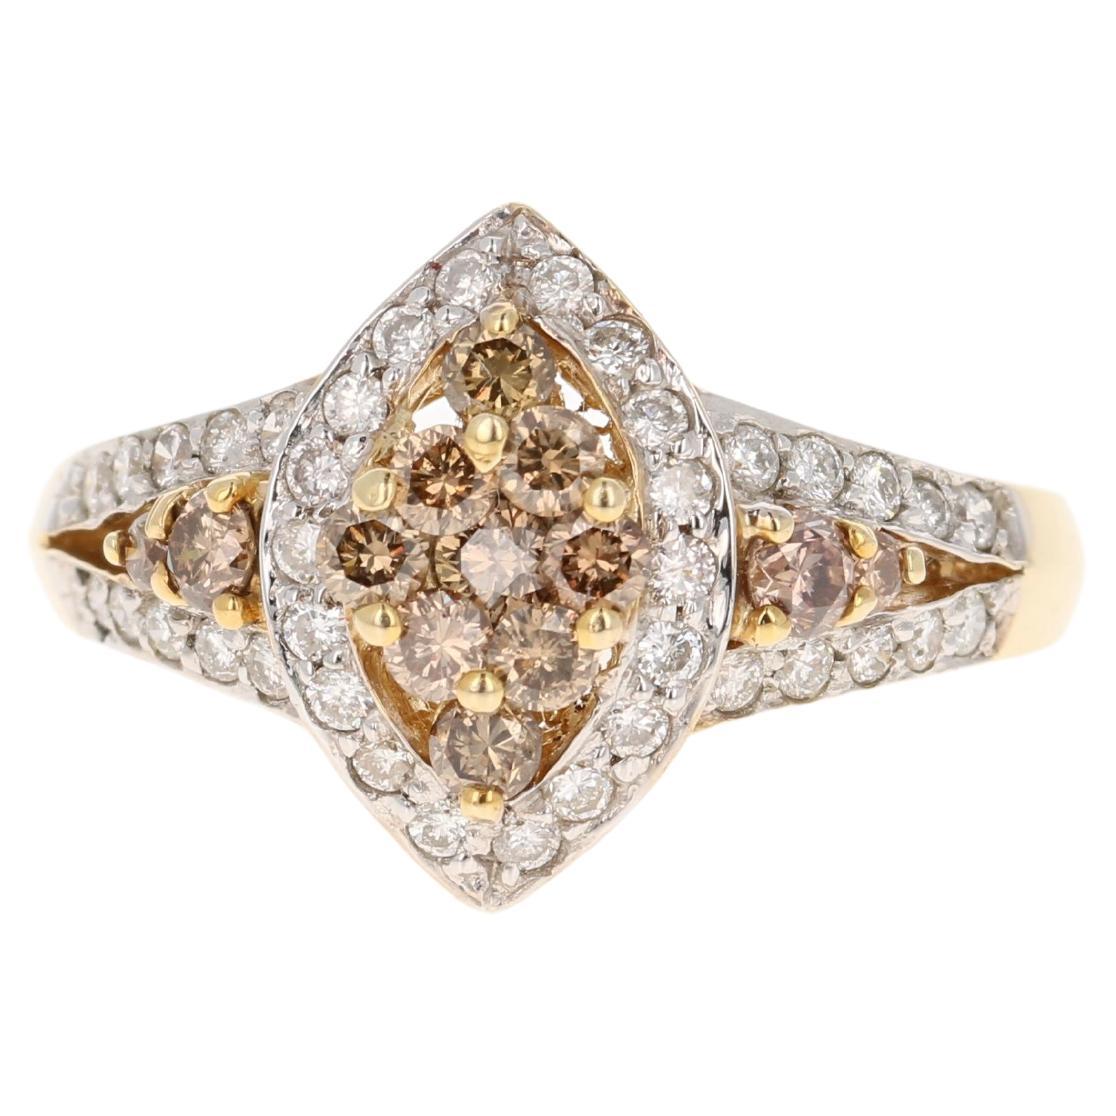 Dieser Ring hat 13 braune natürliche Diamanten mit einem Gewicht von 0,57 Karat und 38 Diamanten im Rundschliff mit einem Gewicht von 0,37 Karat. Das Gesamtkaratgewicht des Rings beträgt 0,97 Karat. 

Das Gesamtkaratgewicht des Rings beträgt 0,97